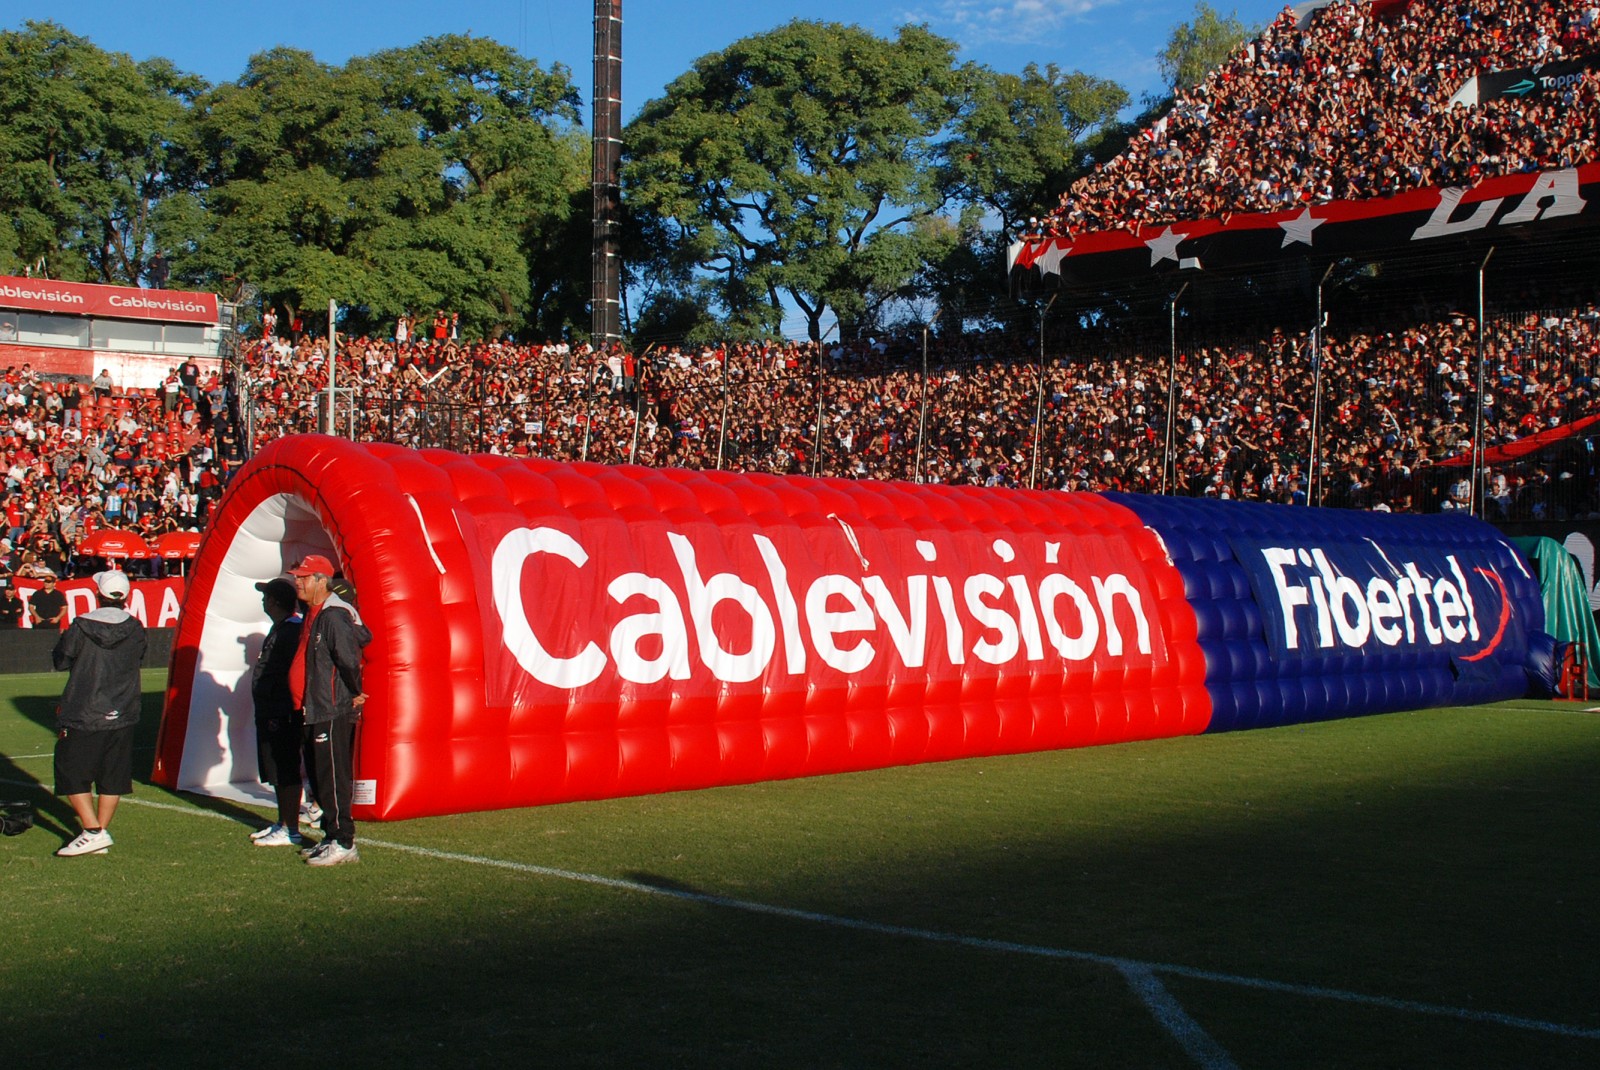 Club Atlético Newell’s Old Boys (Cablevisión-Fibertel)